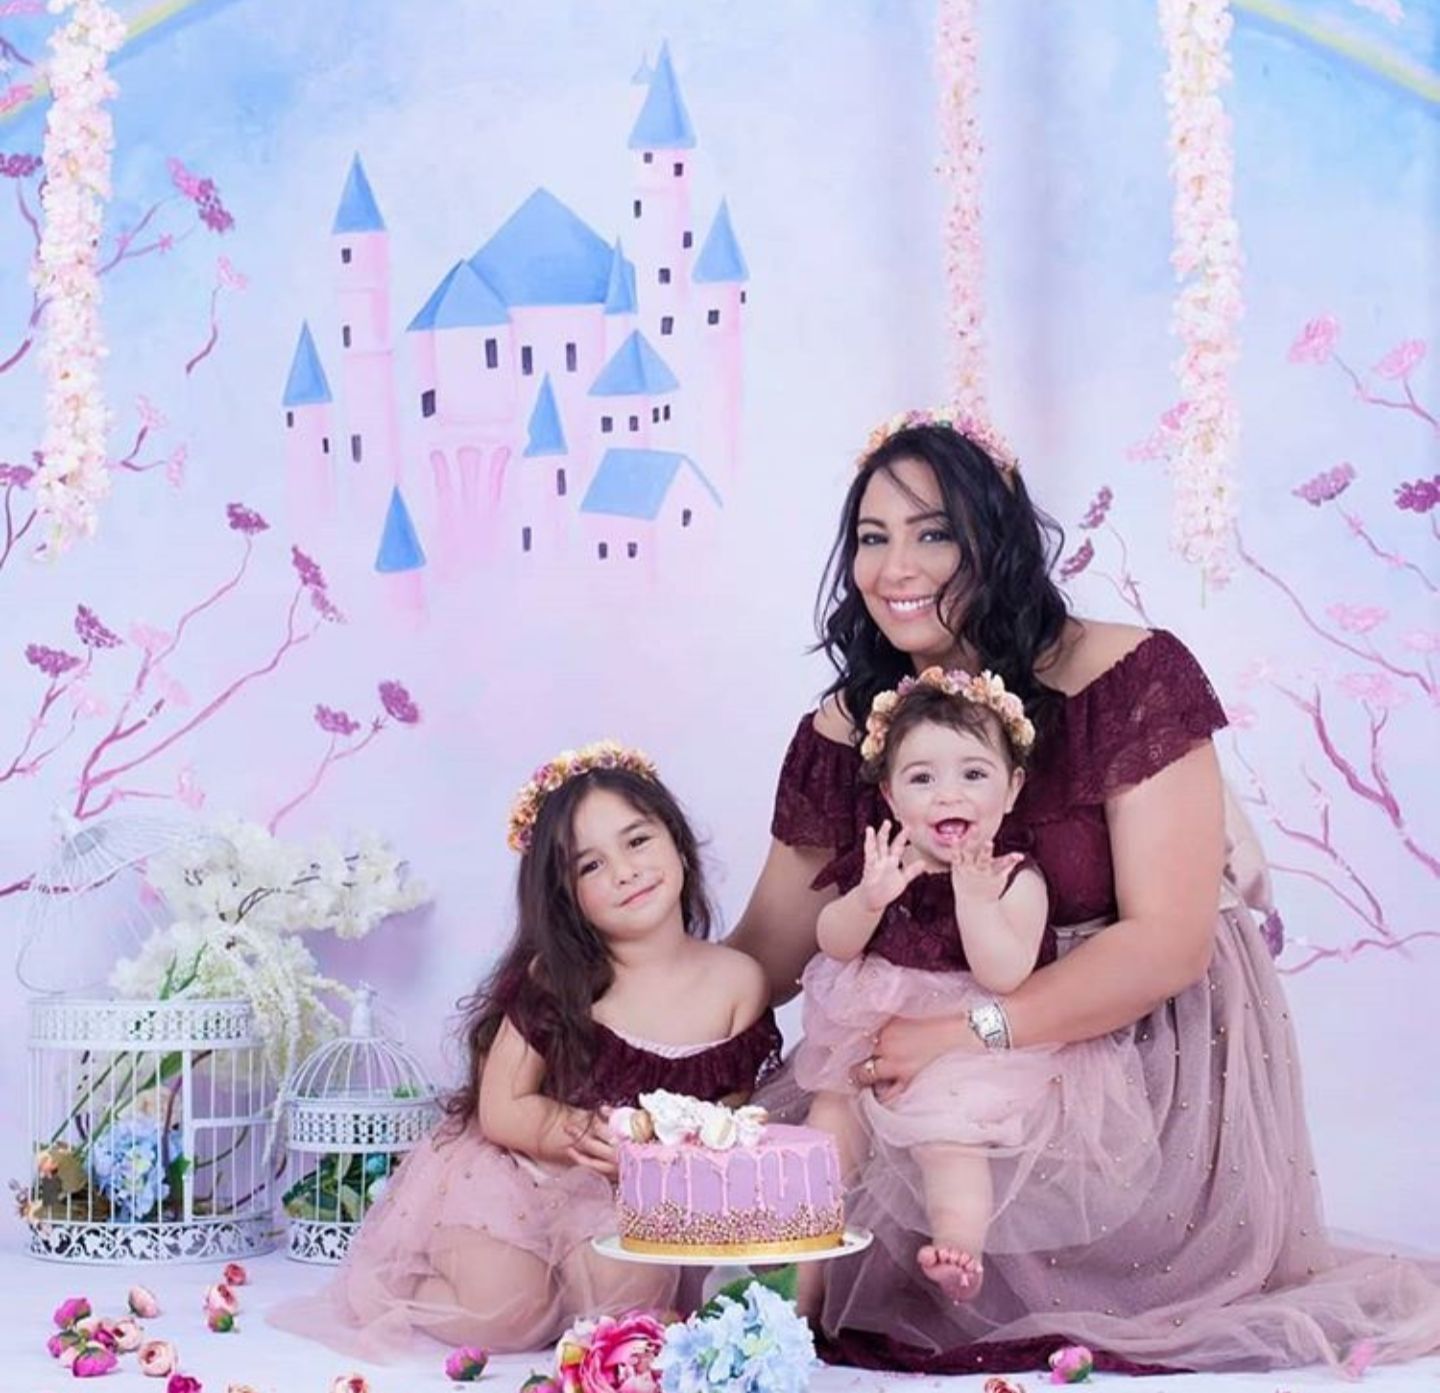 صورة لأول مرة الممثلة حنان الابراهيمي تظهر رفقة ابنتيها